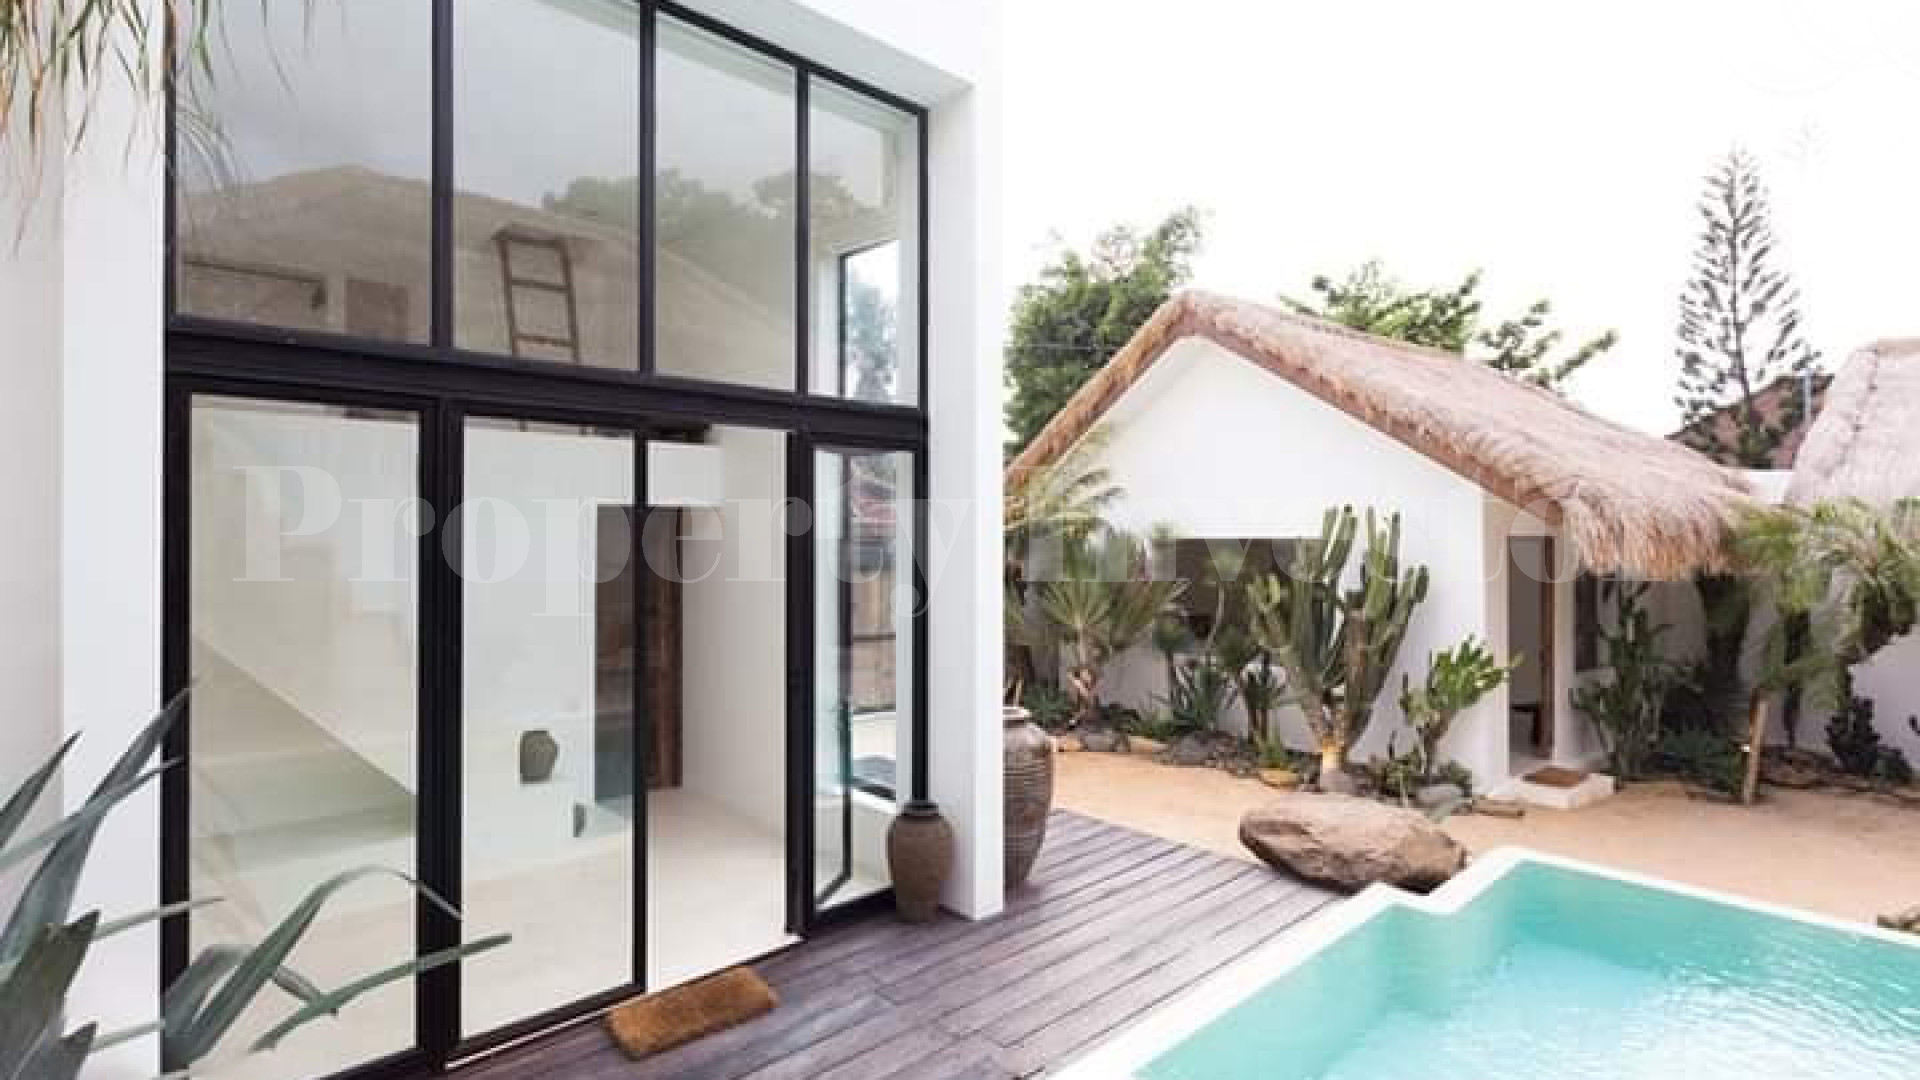 Новая дизайнерская вилла в японском стиле с 4 спальнями на Бали